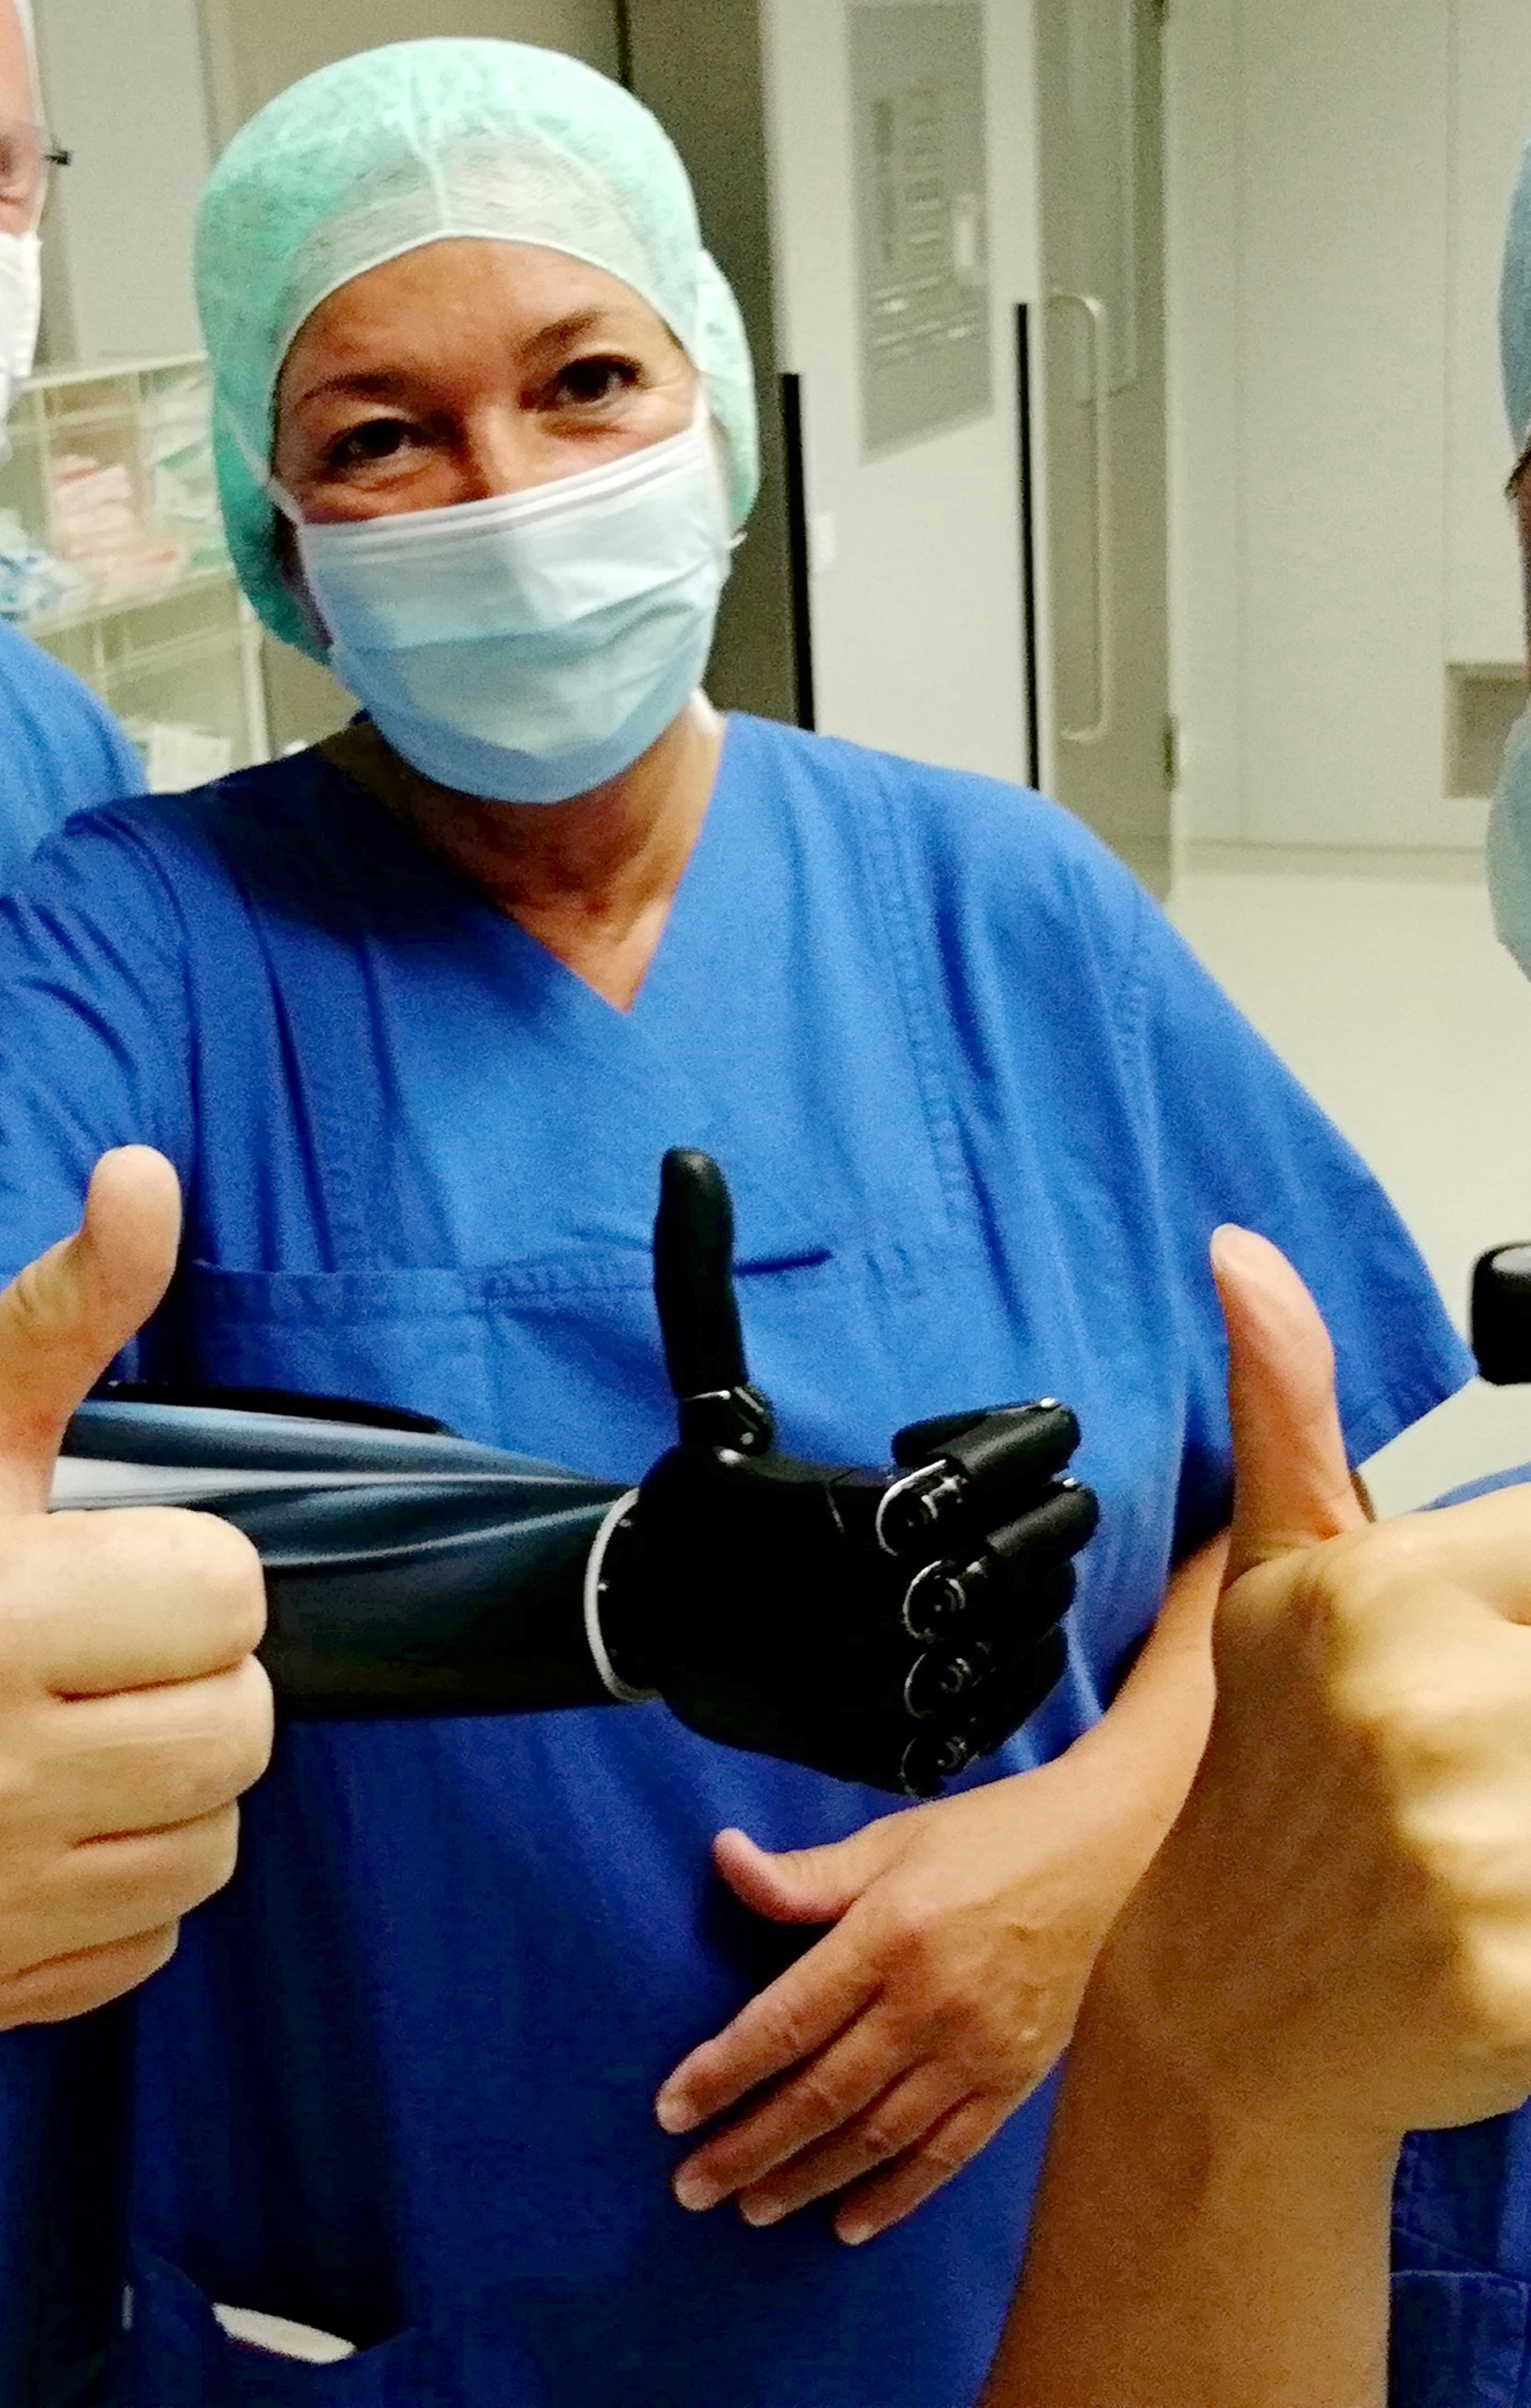 <p>High-Tech-Prothese ermöglicht Rückkehr in den Beruf als OP-Schwester. (Bild: Britta Meinecke-Allekotte / BG Klinikum Duisburg)</p>